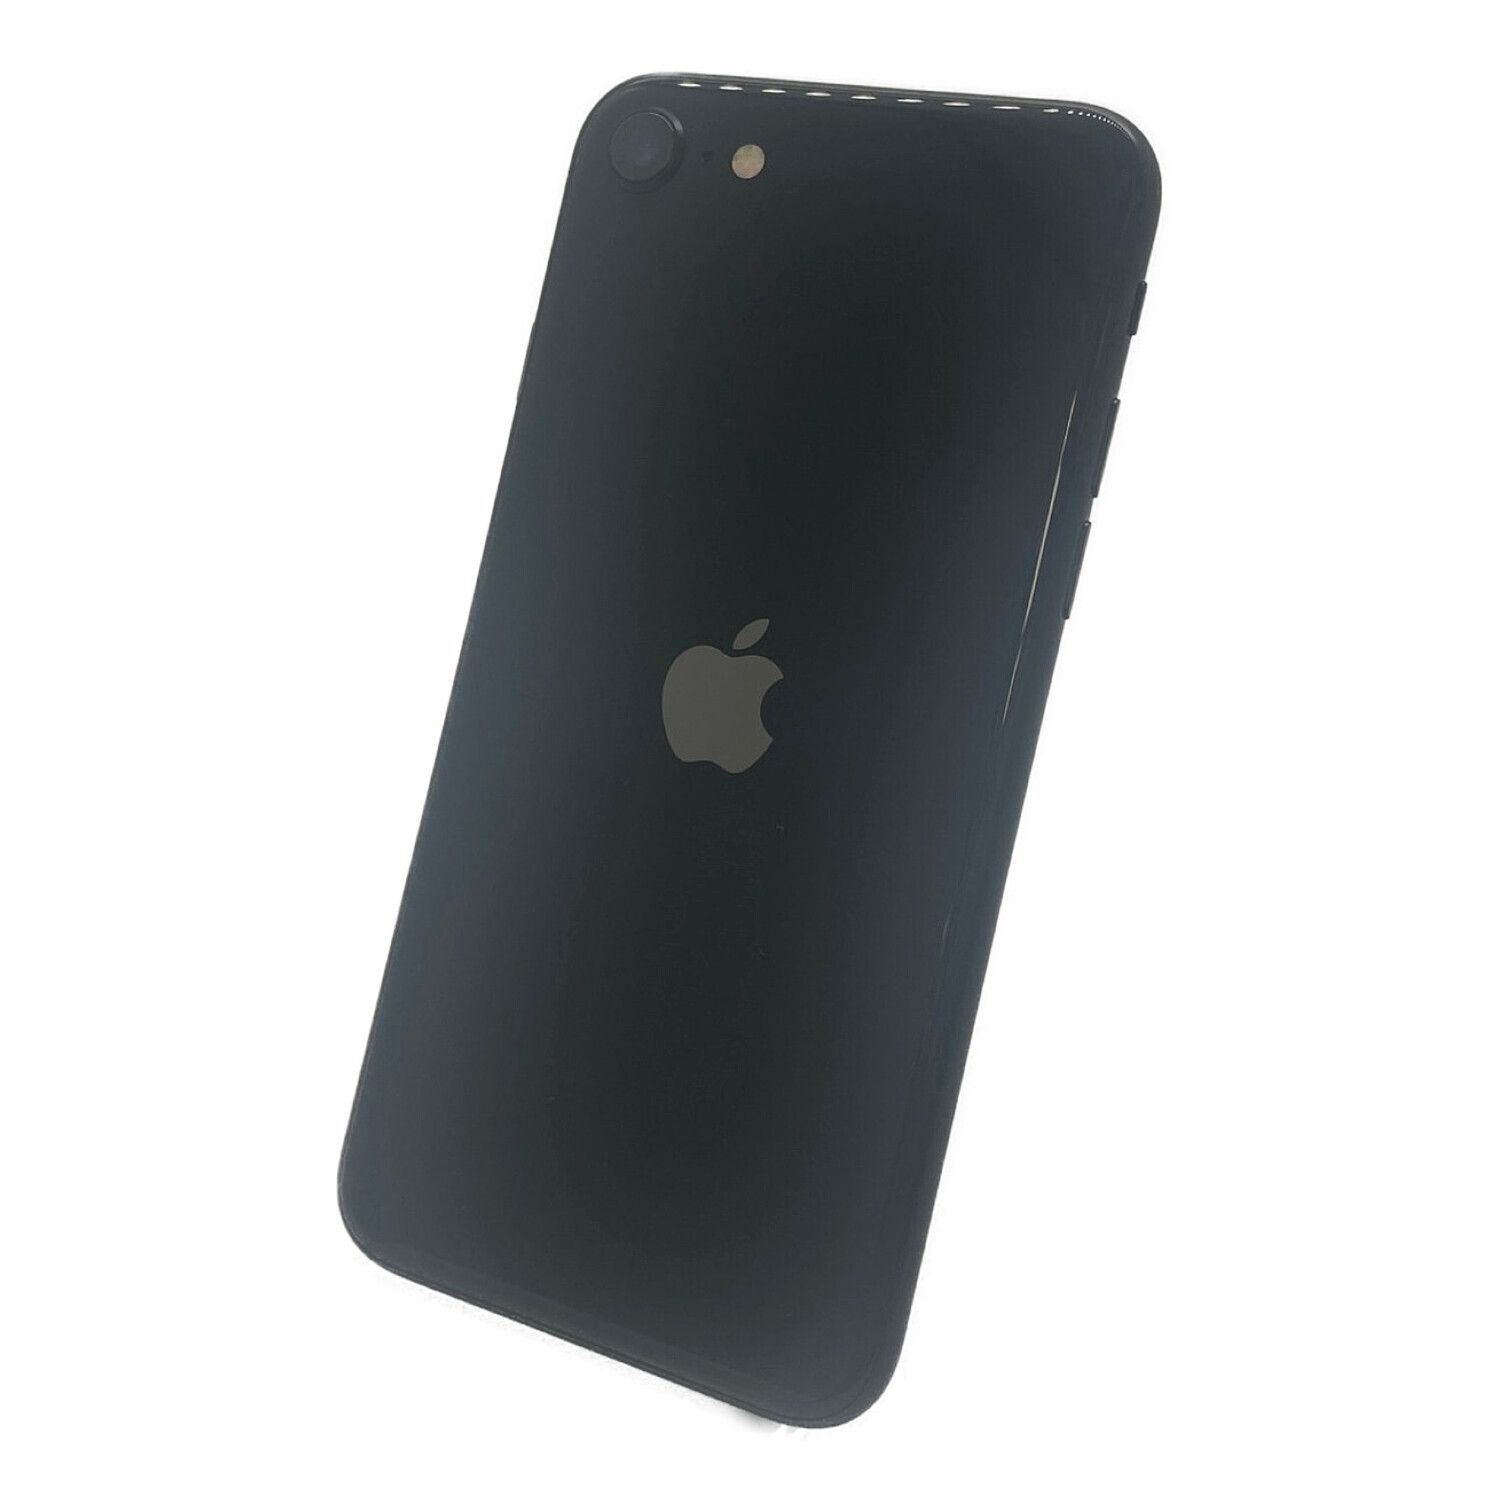 Apple アップル iPhone SE 第2世代 128GB 黒-